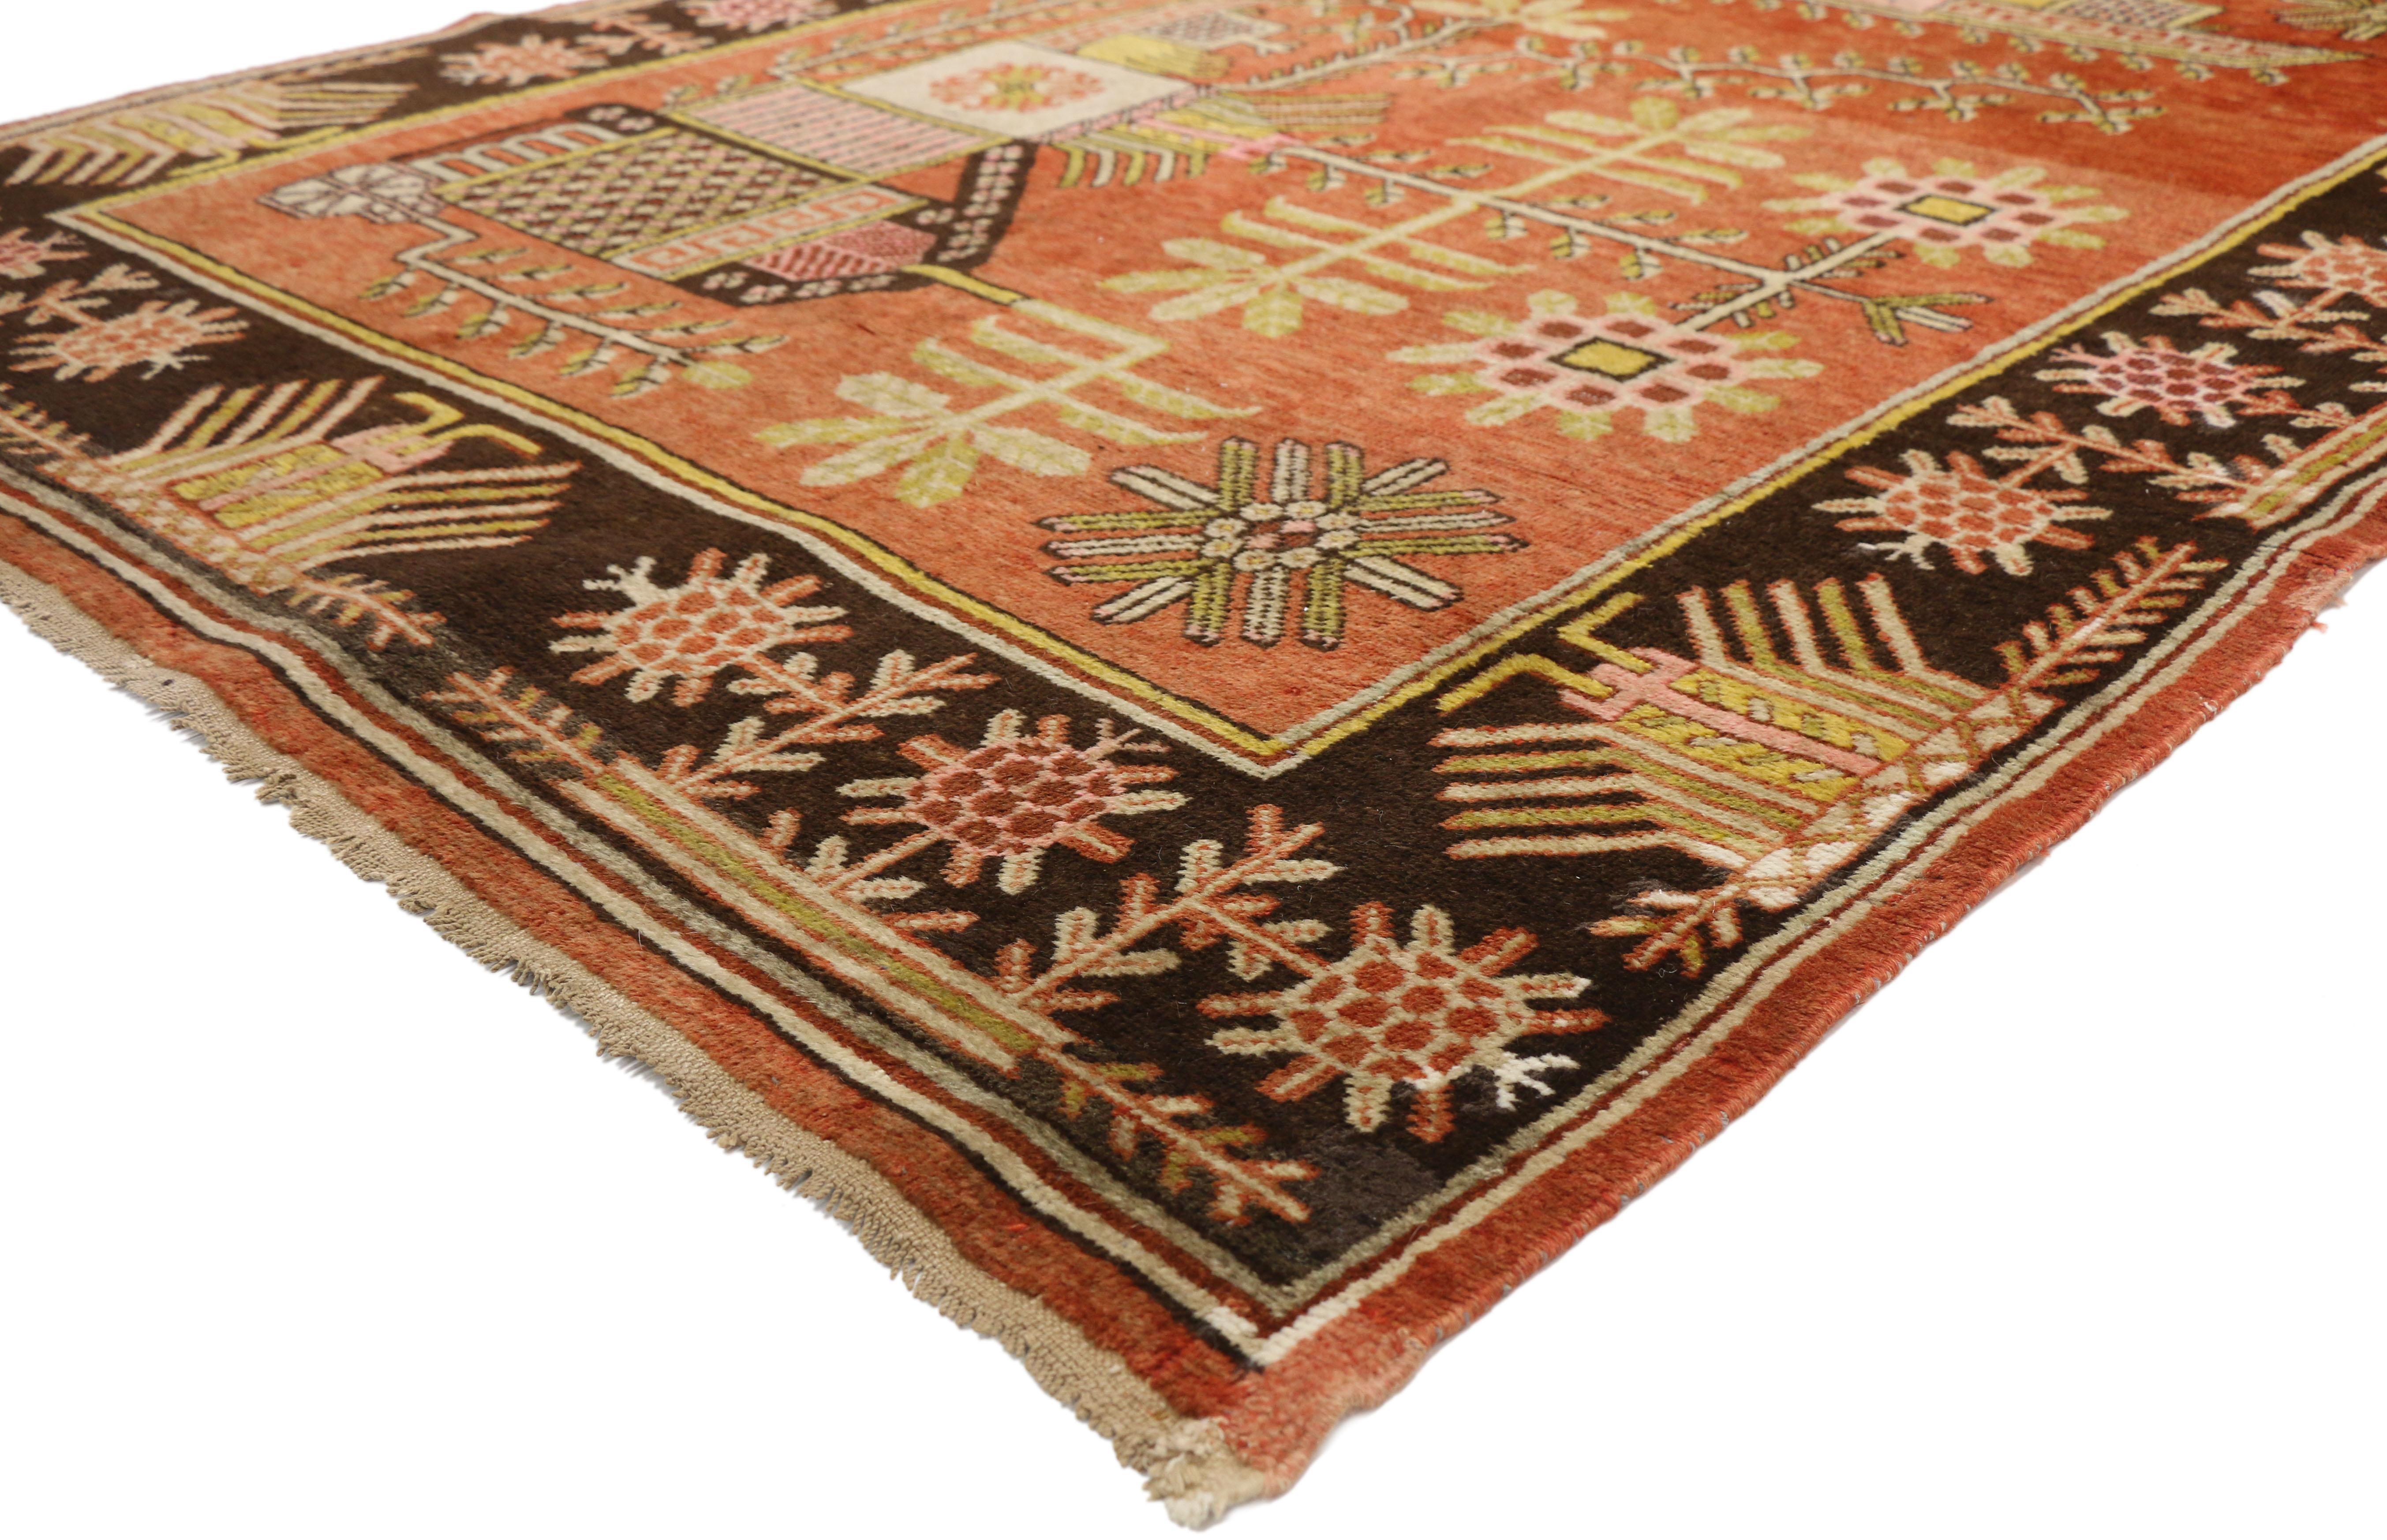 77325 antiker Ostturkestan-Khotan-Teppich im eklektischen nordwestlichen Stil. Dieser antike Khotan-Teppich aus handgeknüpfter Wolle aus Ostturkestan zeigt ein malerisches Muster aus blühenden Vasen im chinesischen Stil, die auf einem abgewetzten